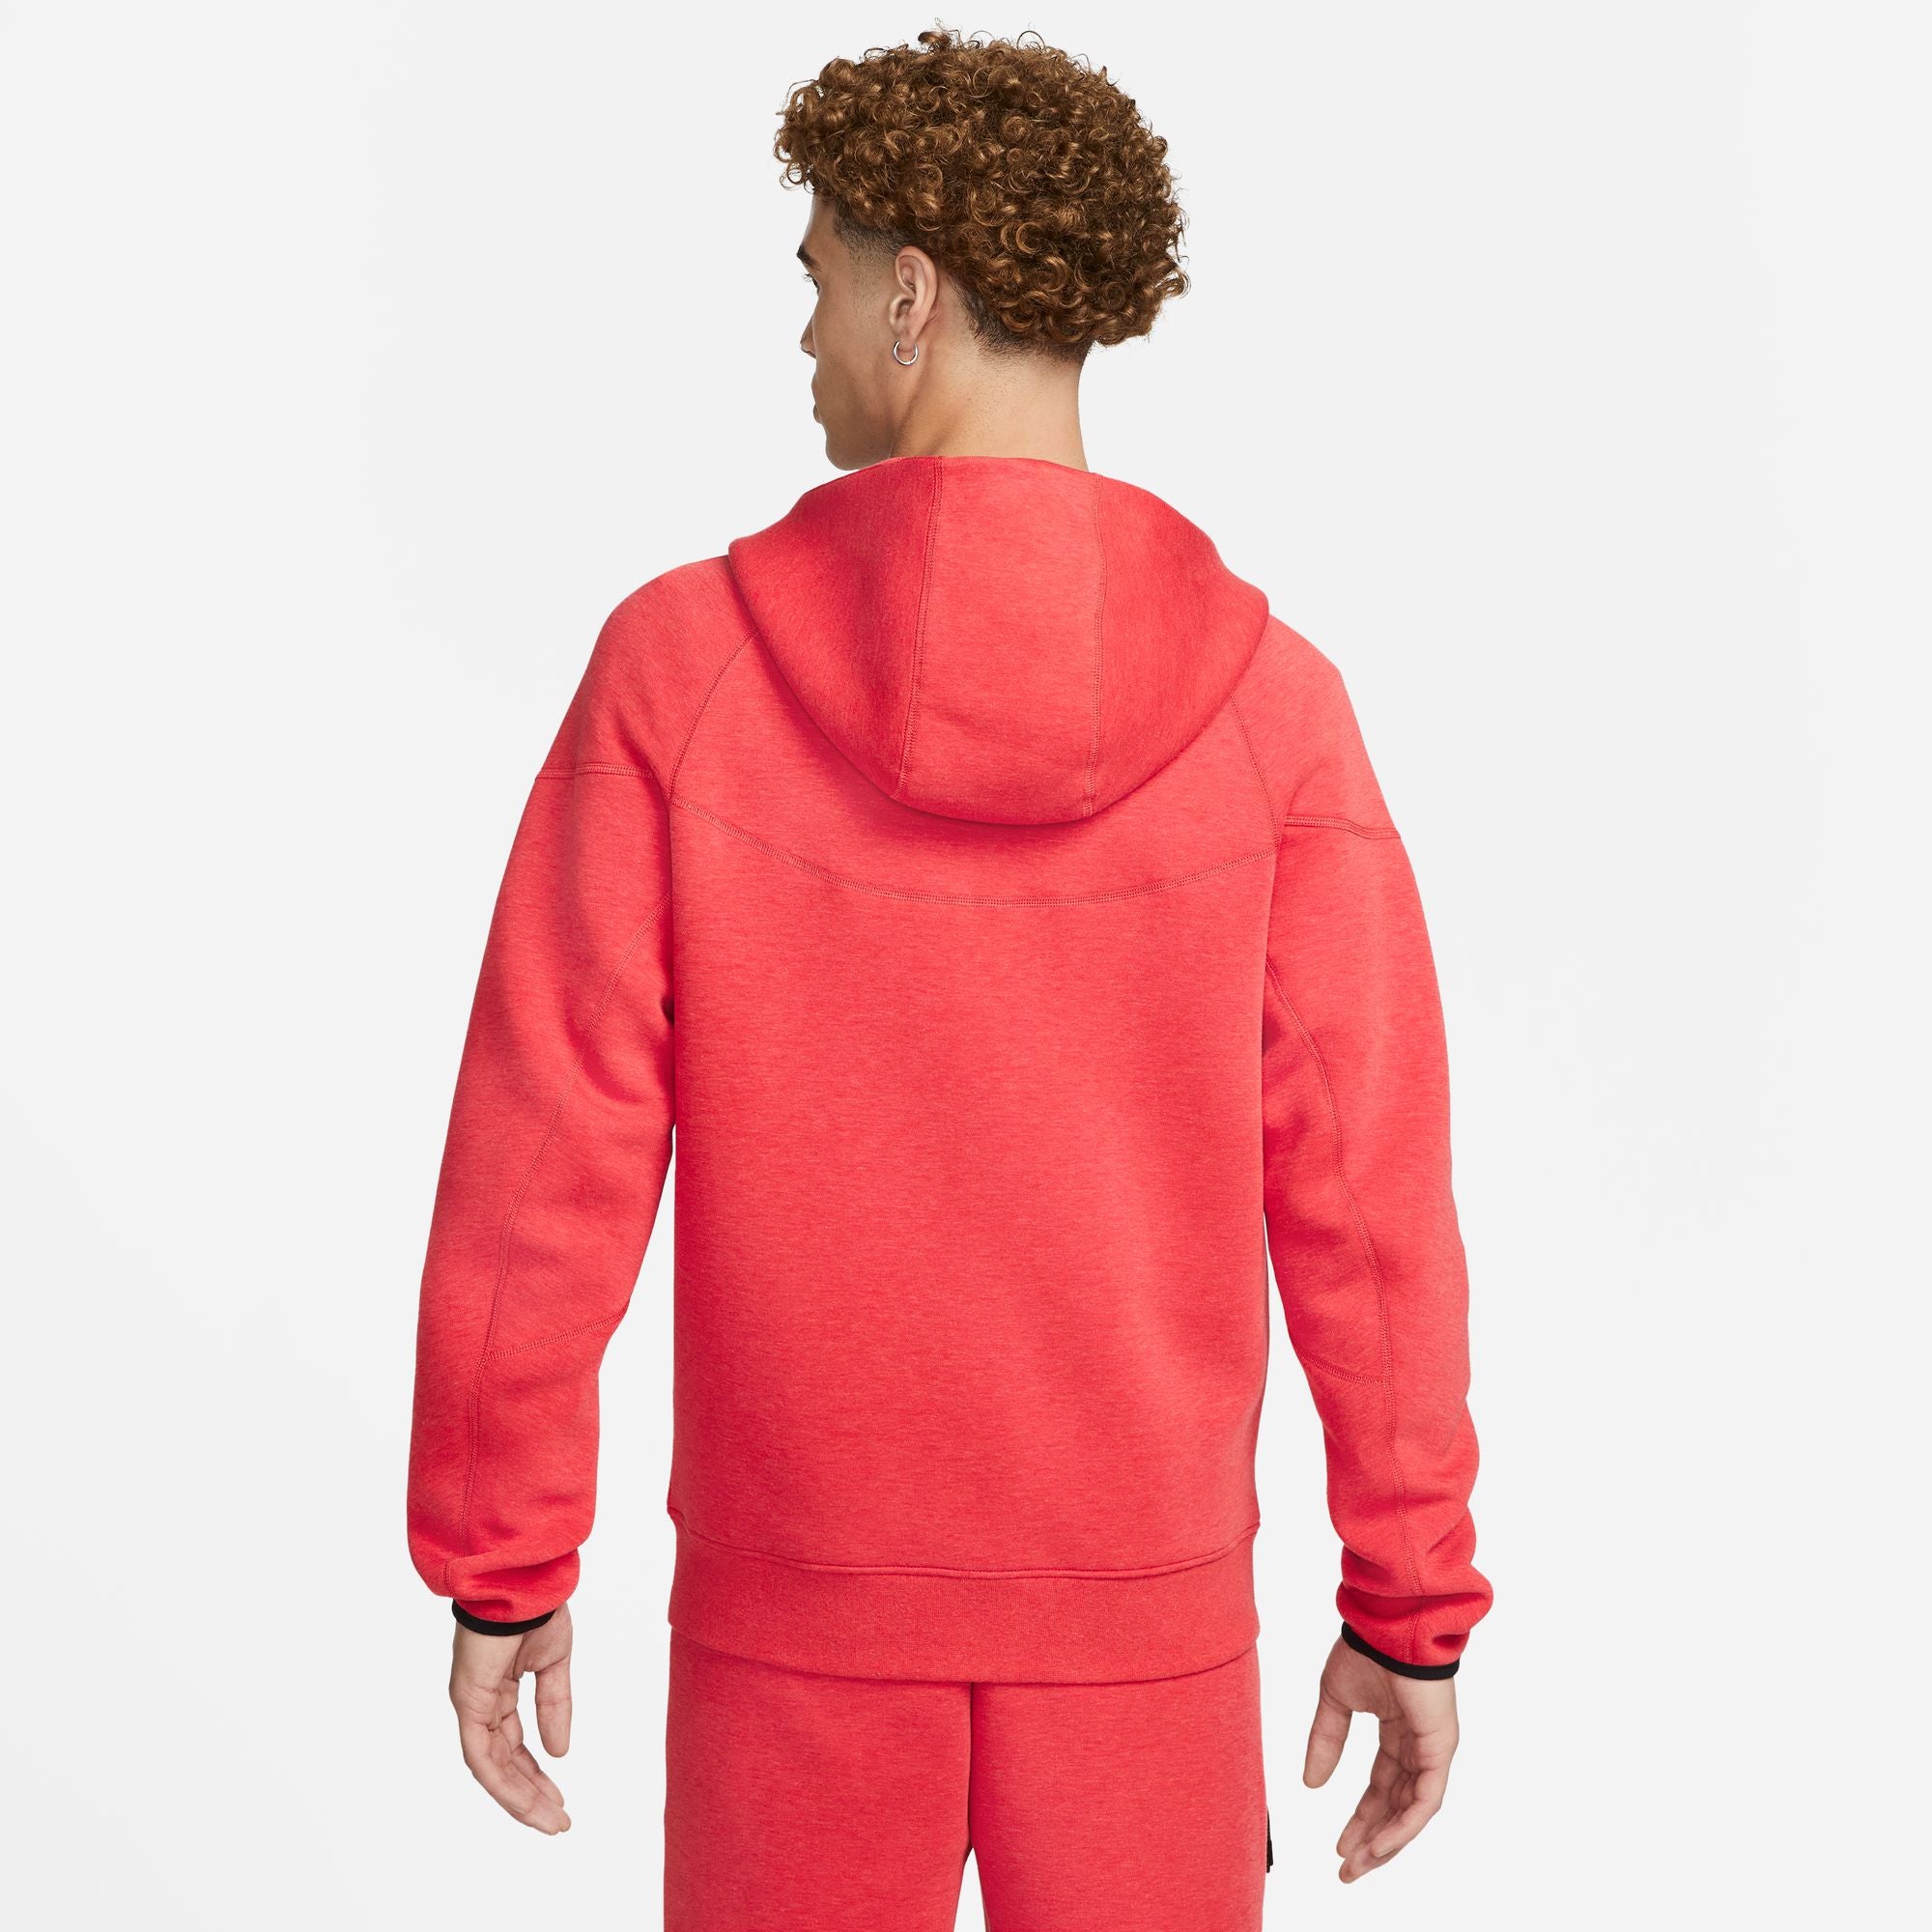 Giacca Windrunner Nike Tech Fleece - Rossa